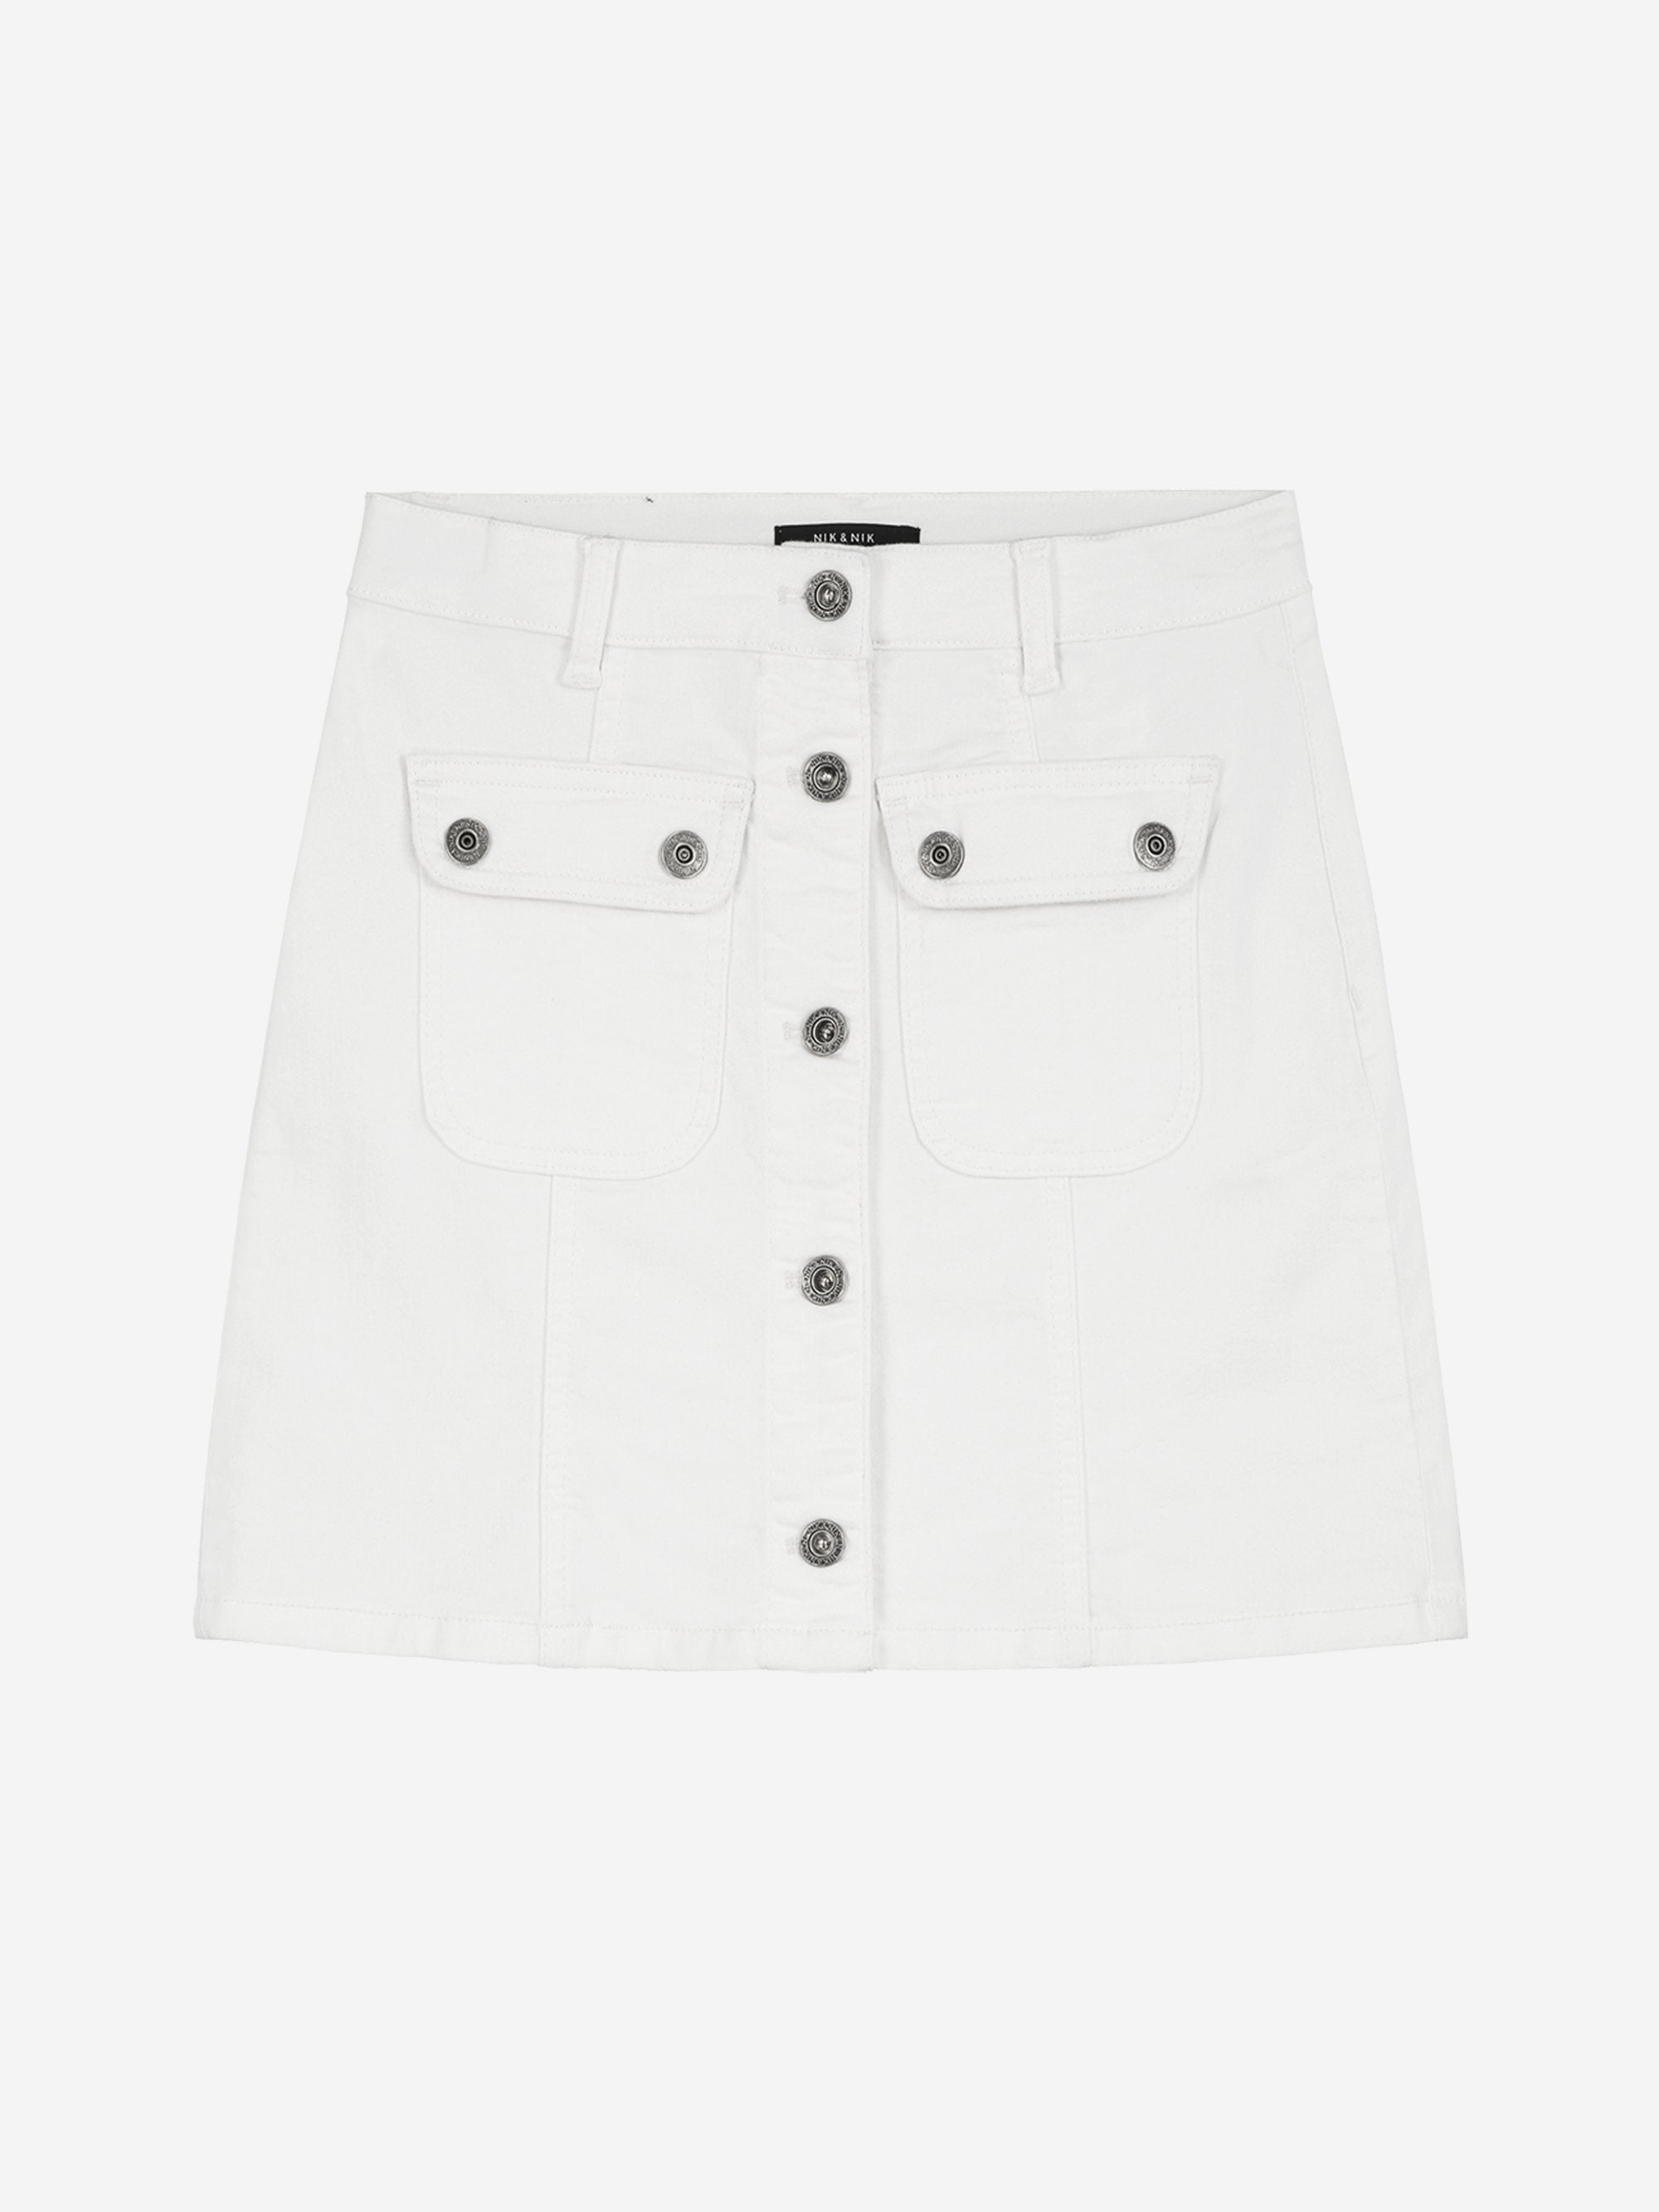 Meisjes Florijne Denim Skirt white van Nik & Nik in de kleur Vintage White in maat 176.